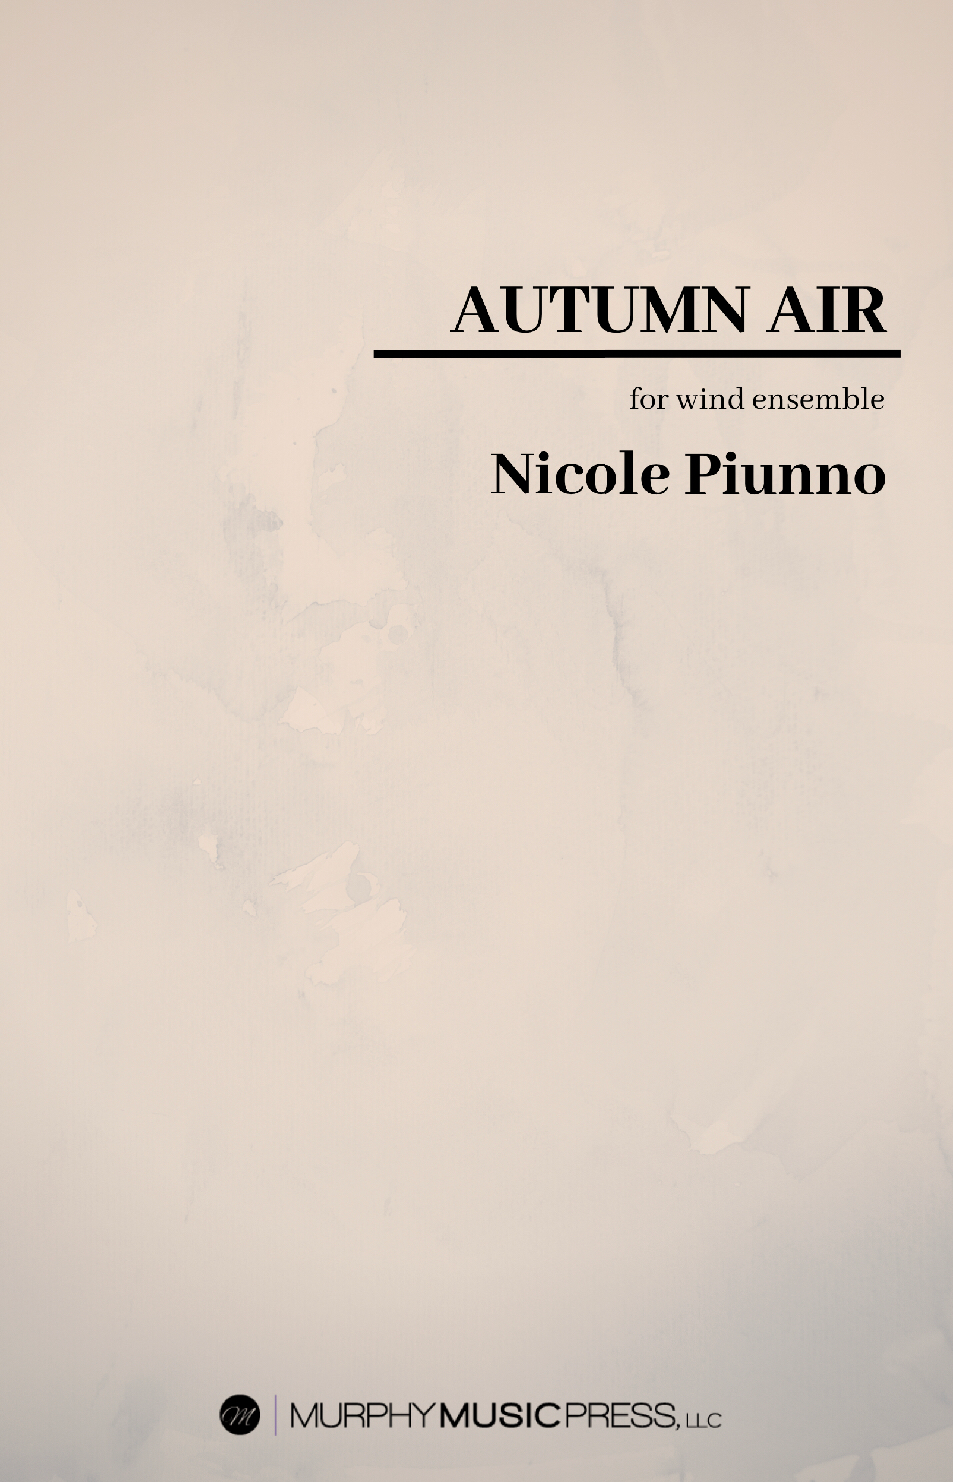 Autumn Air by Nicole Piunno 